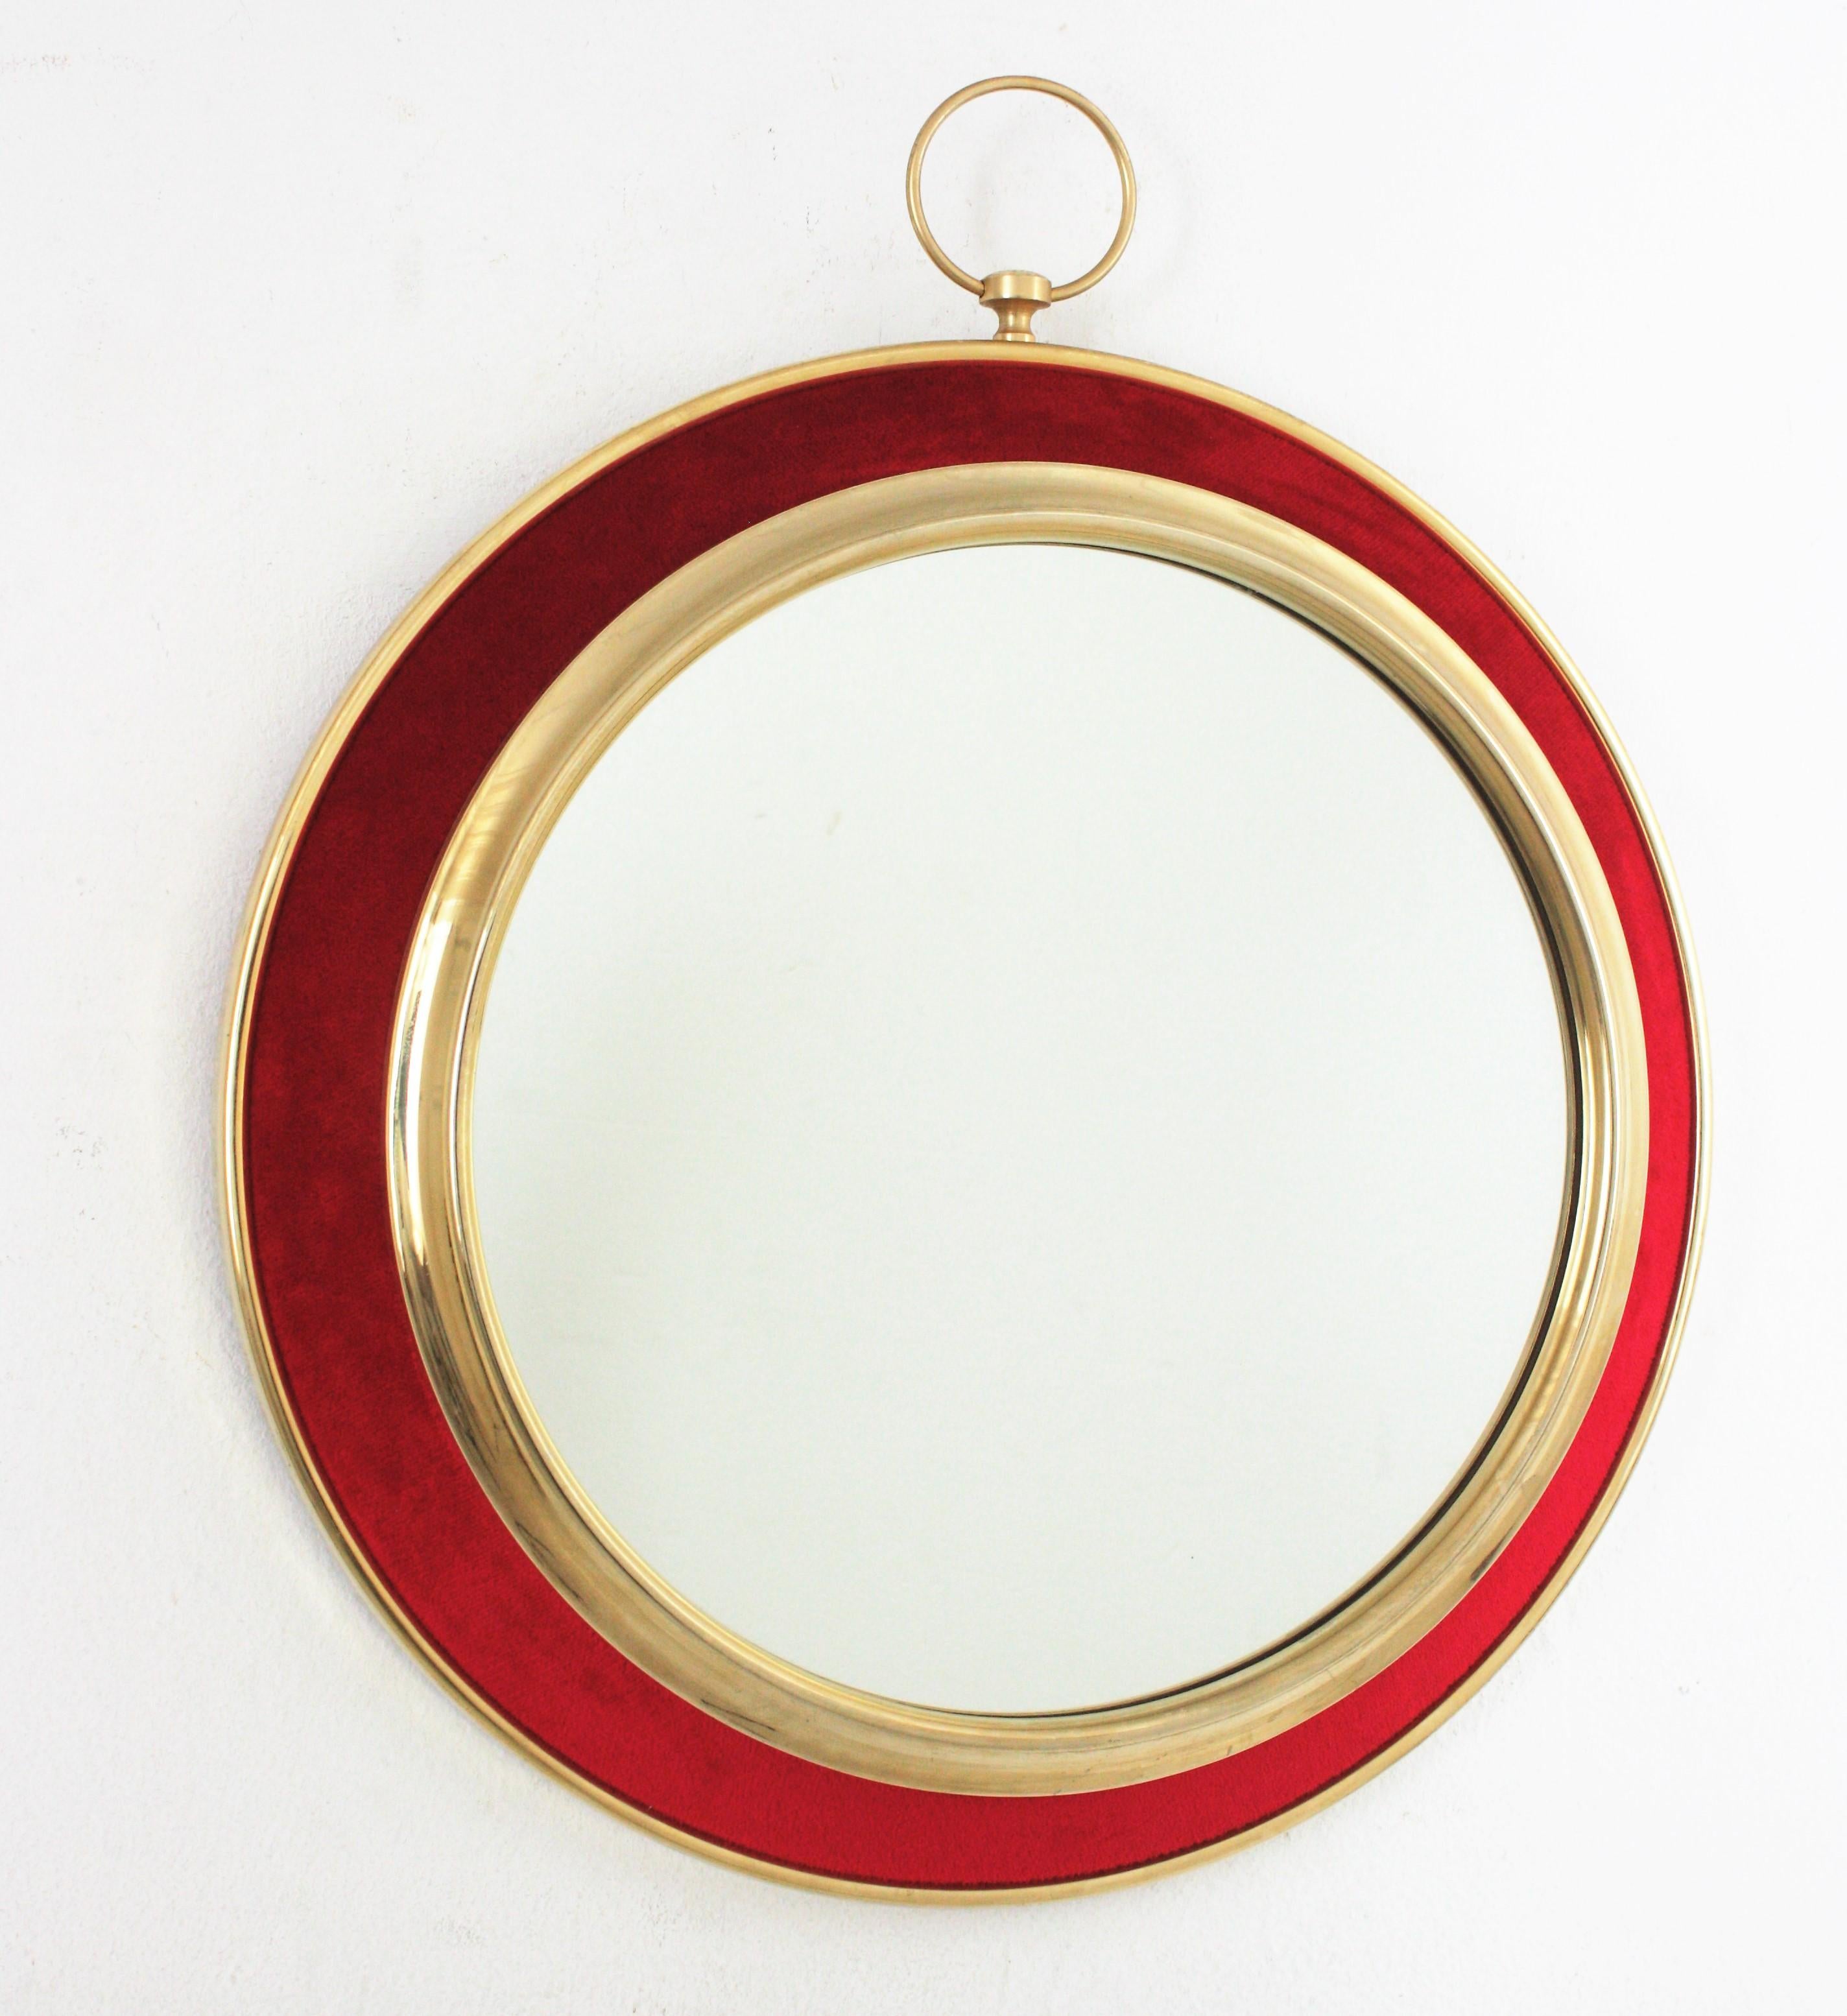 Wandspiegel in Form einer Taschenuhr aus rotem Samt und Messing, Spanien, 1950er-1960er Jahre
Auffälliger Wandspiegel in Form einer Taschenuhr aus Messing im Stil von Piero Fornasetti, dessen Design seit den 1940er Jahren nichts von seiner Wirkung